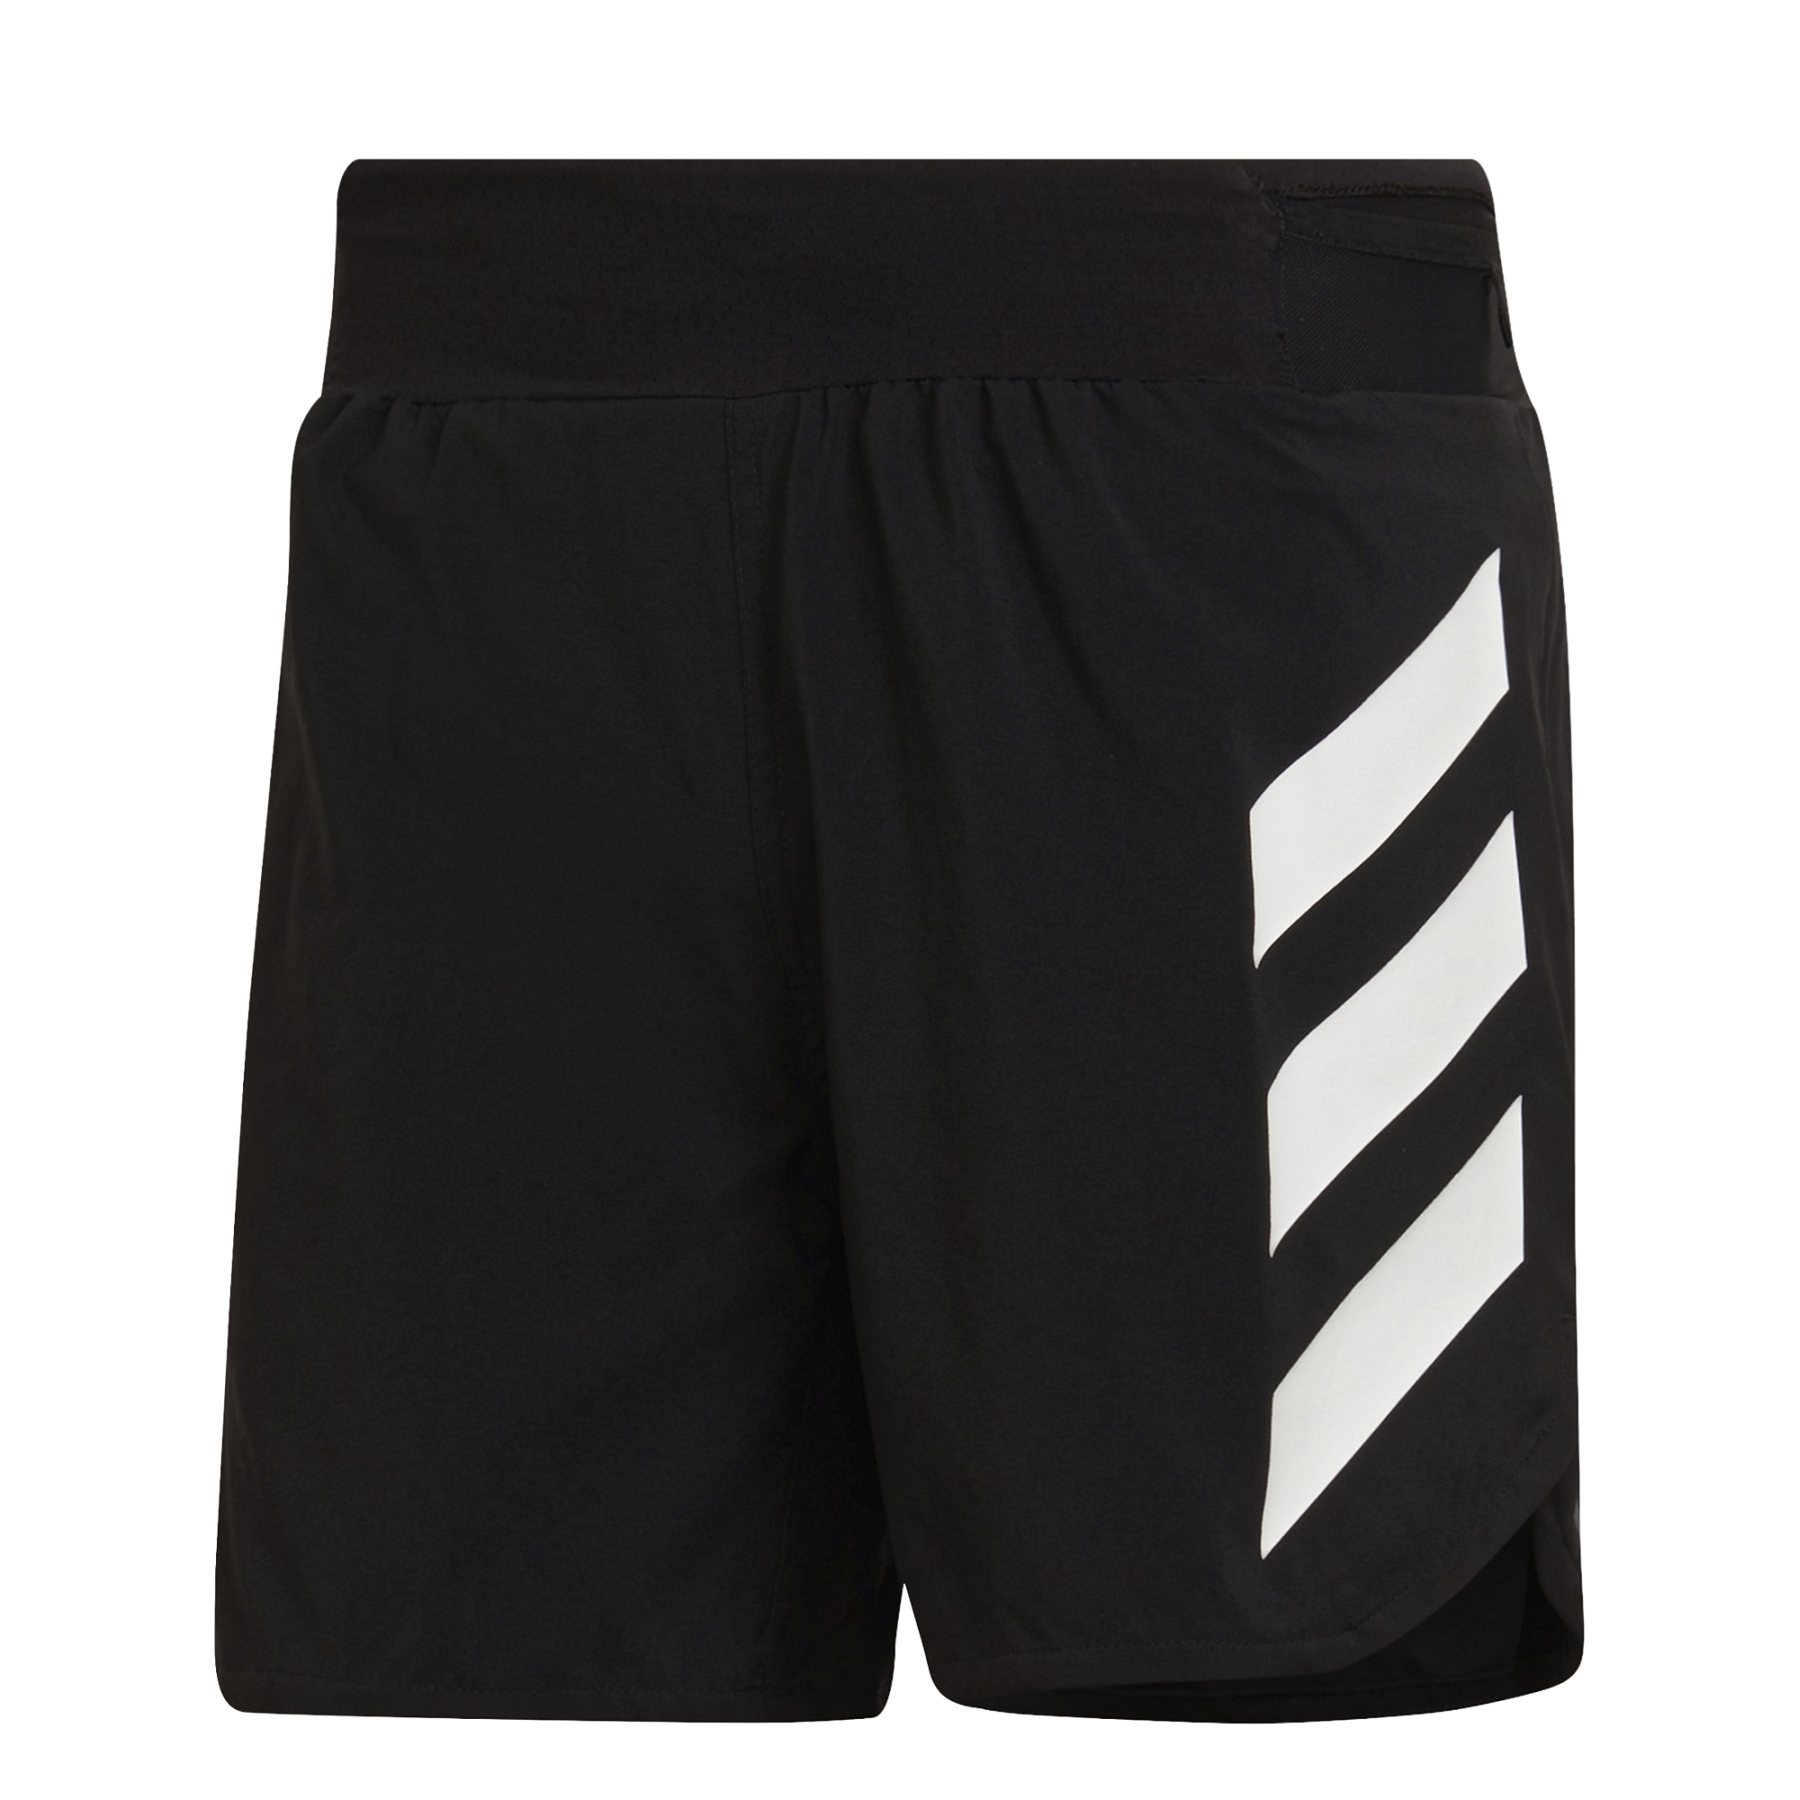 Produktbild von adidas Männer TERREX Agravic 5 Zoll Trail Running Shorts - schwarz HA7543